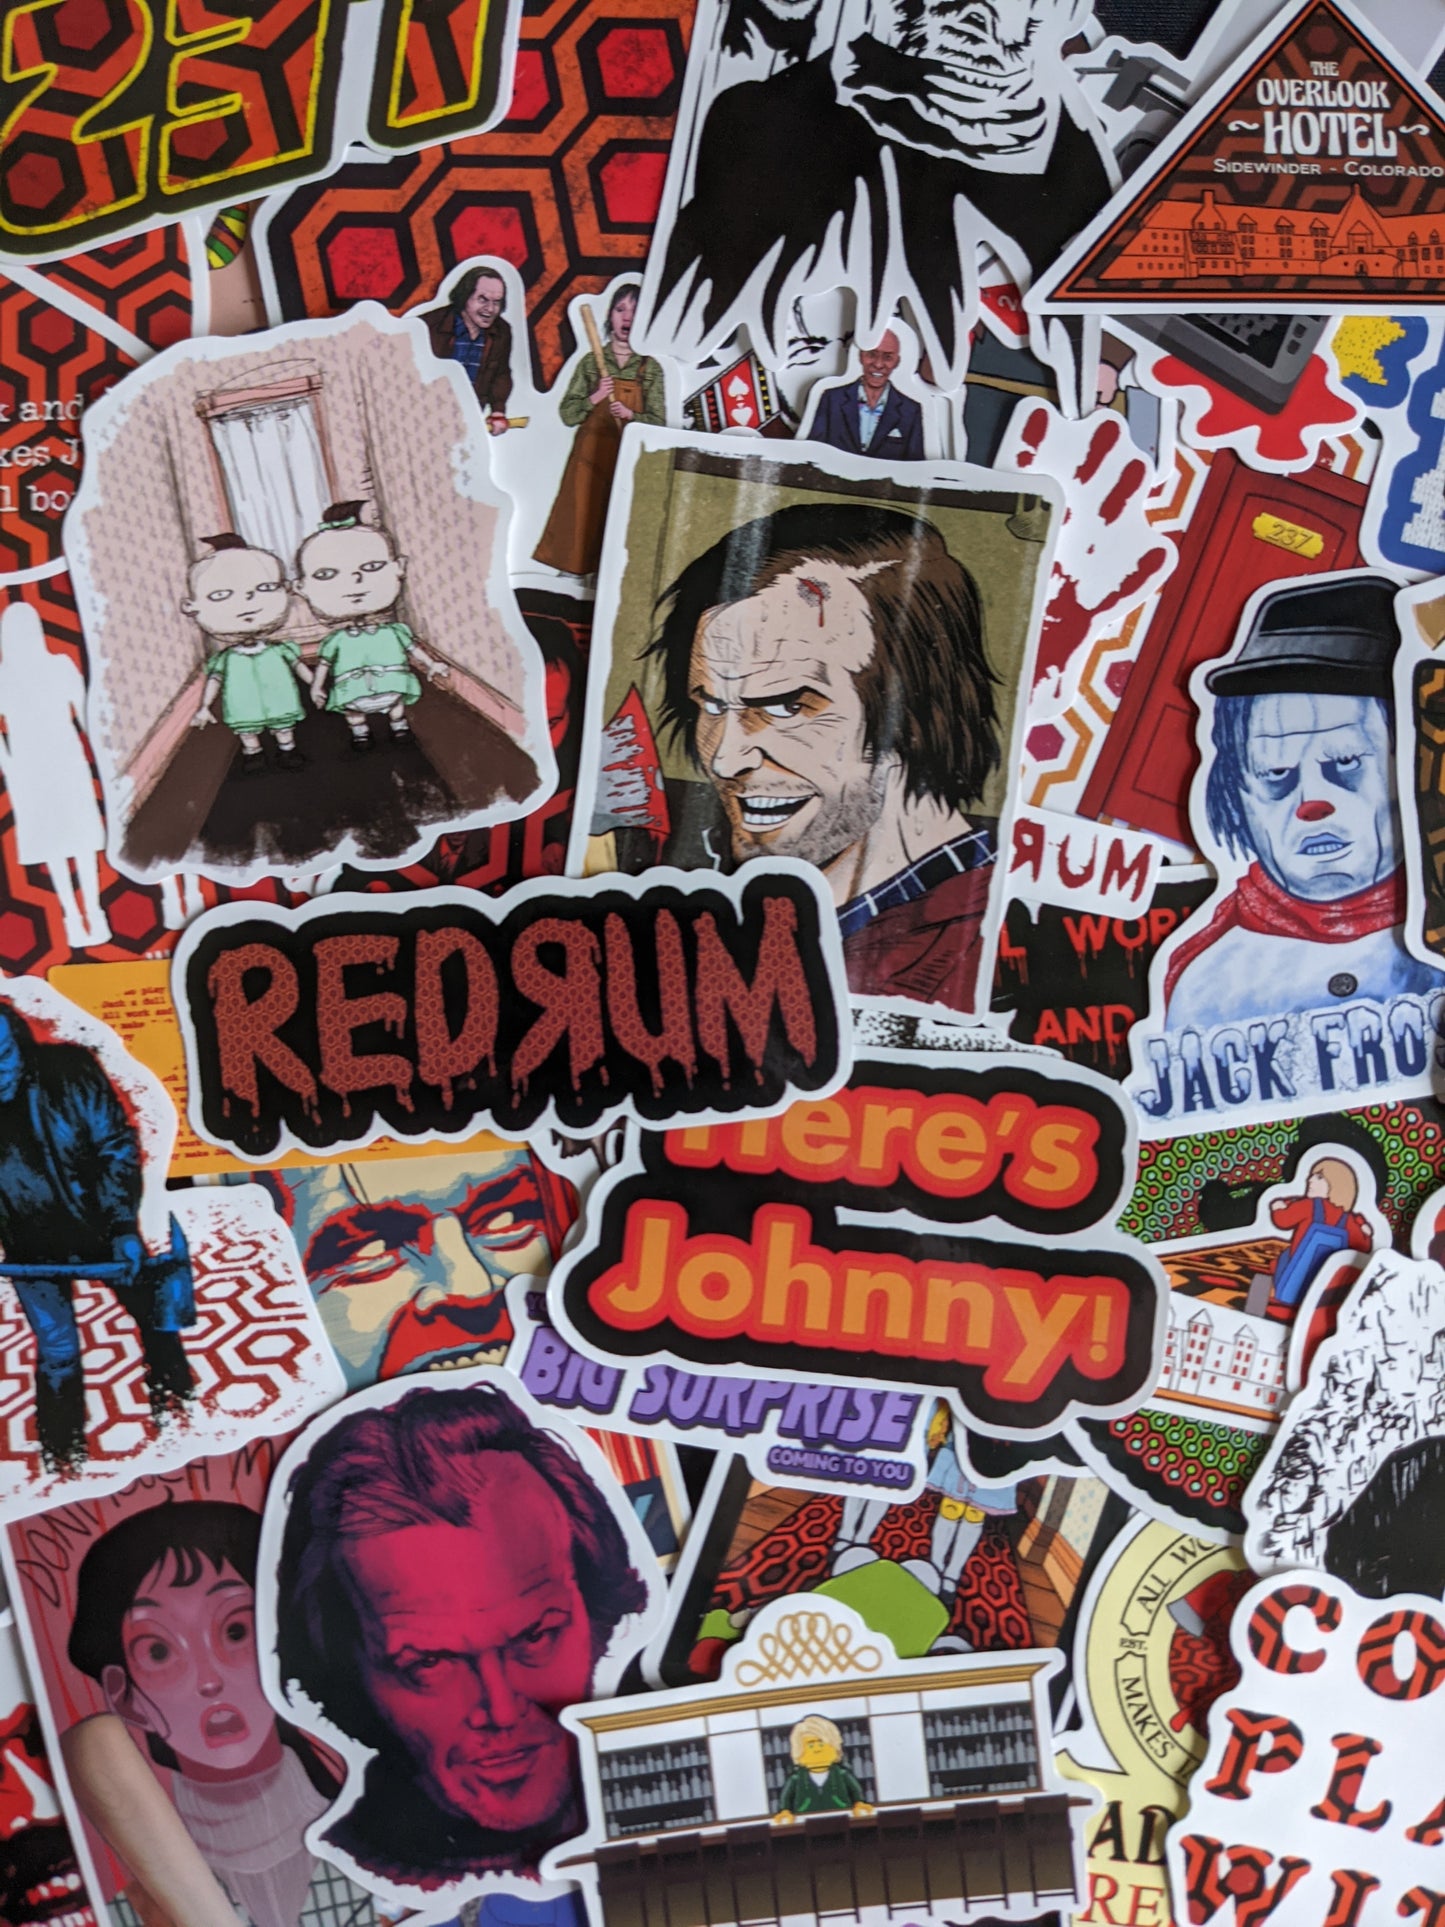 Horror Movie Sticker Pack